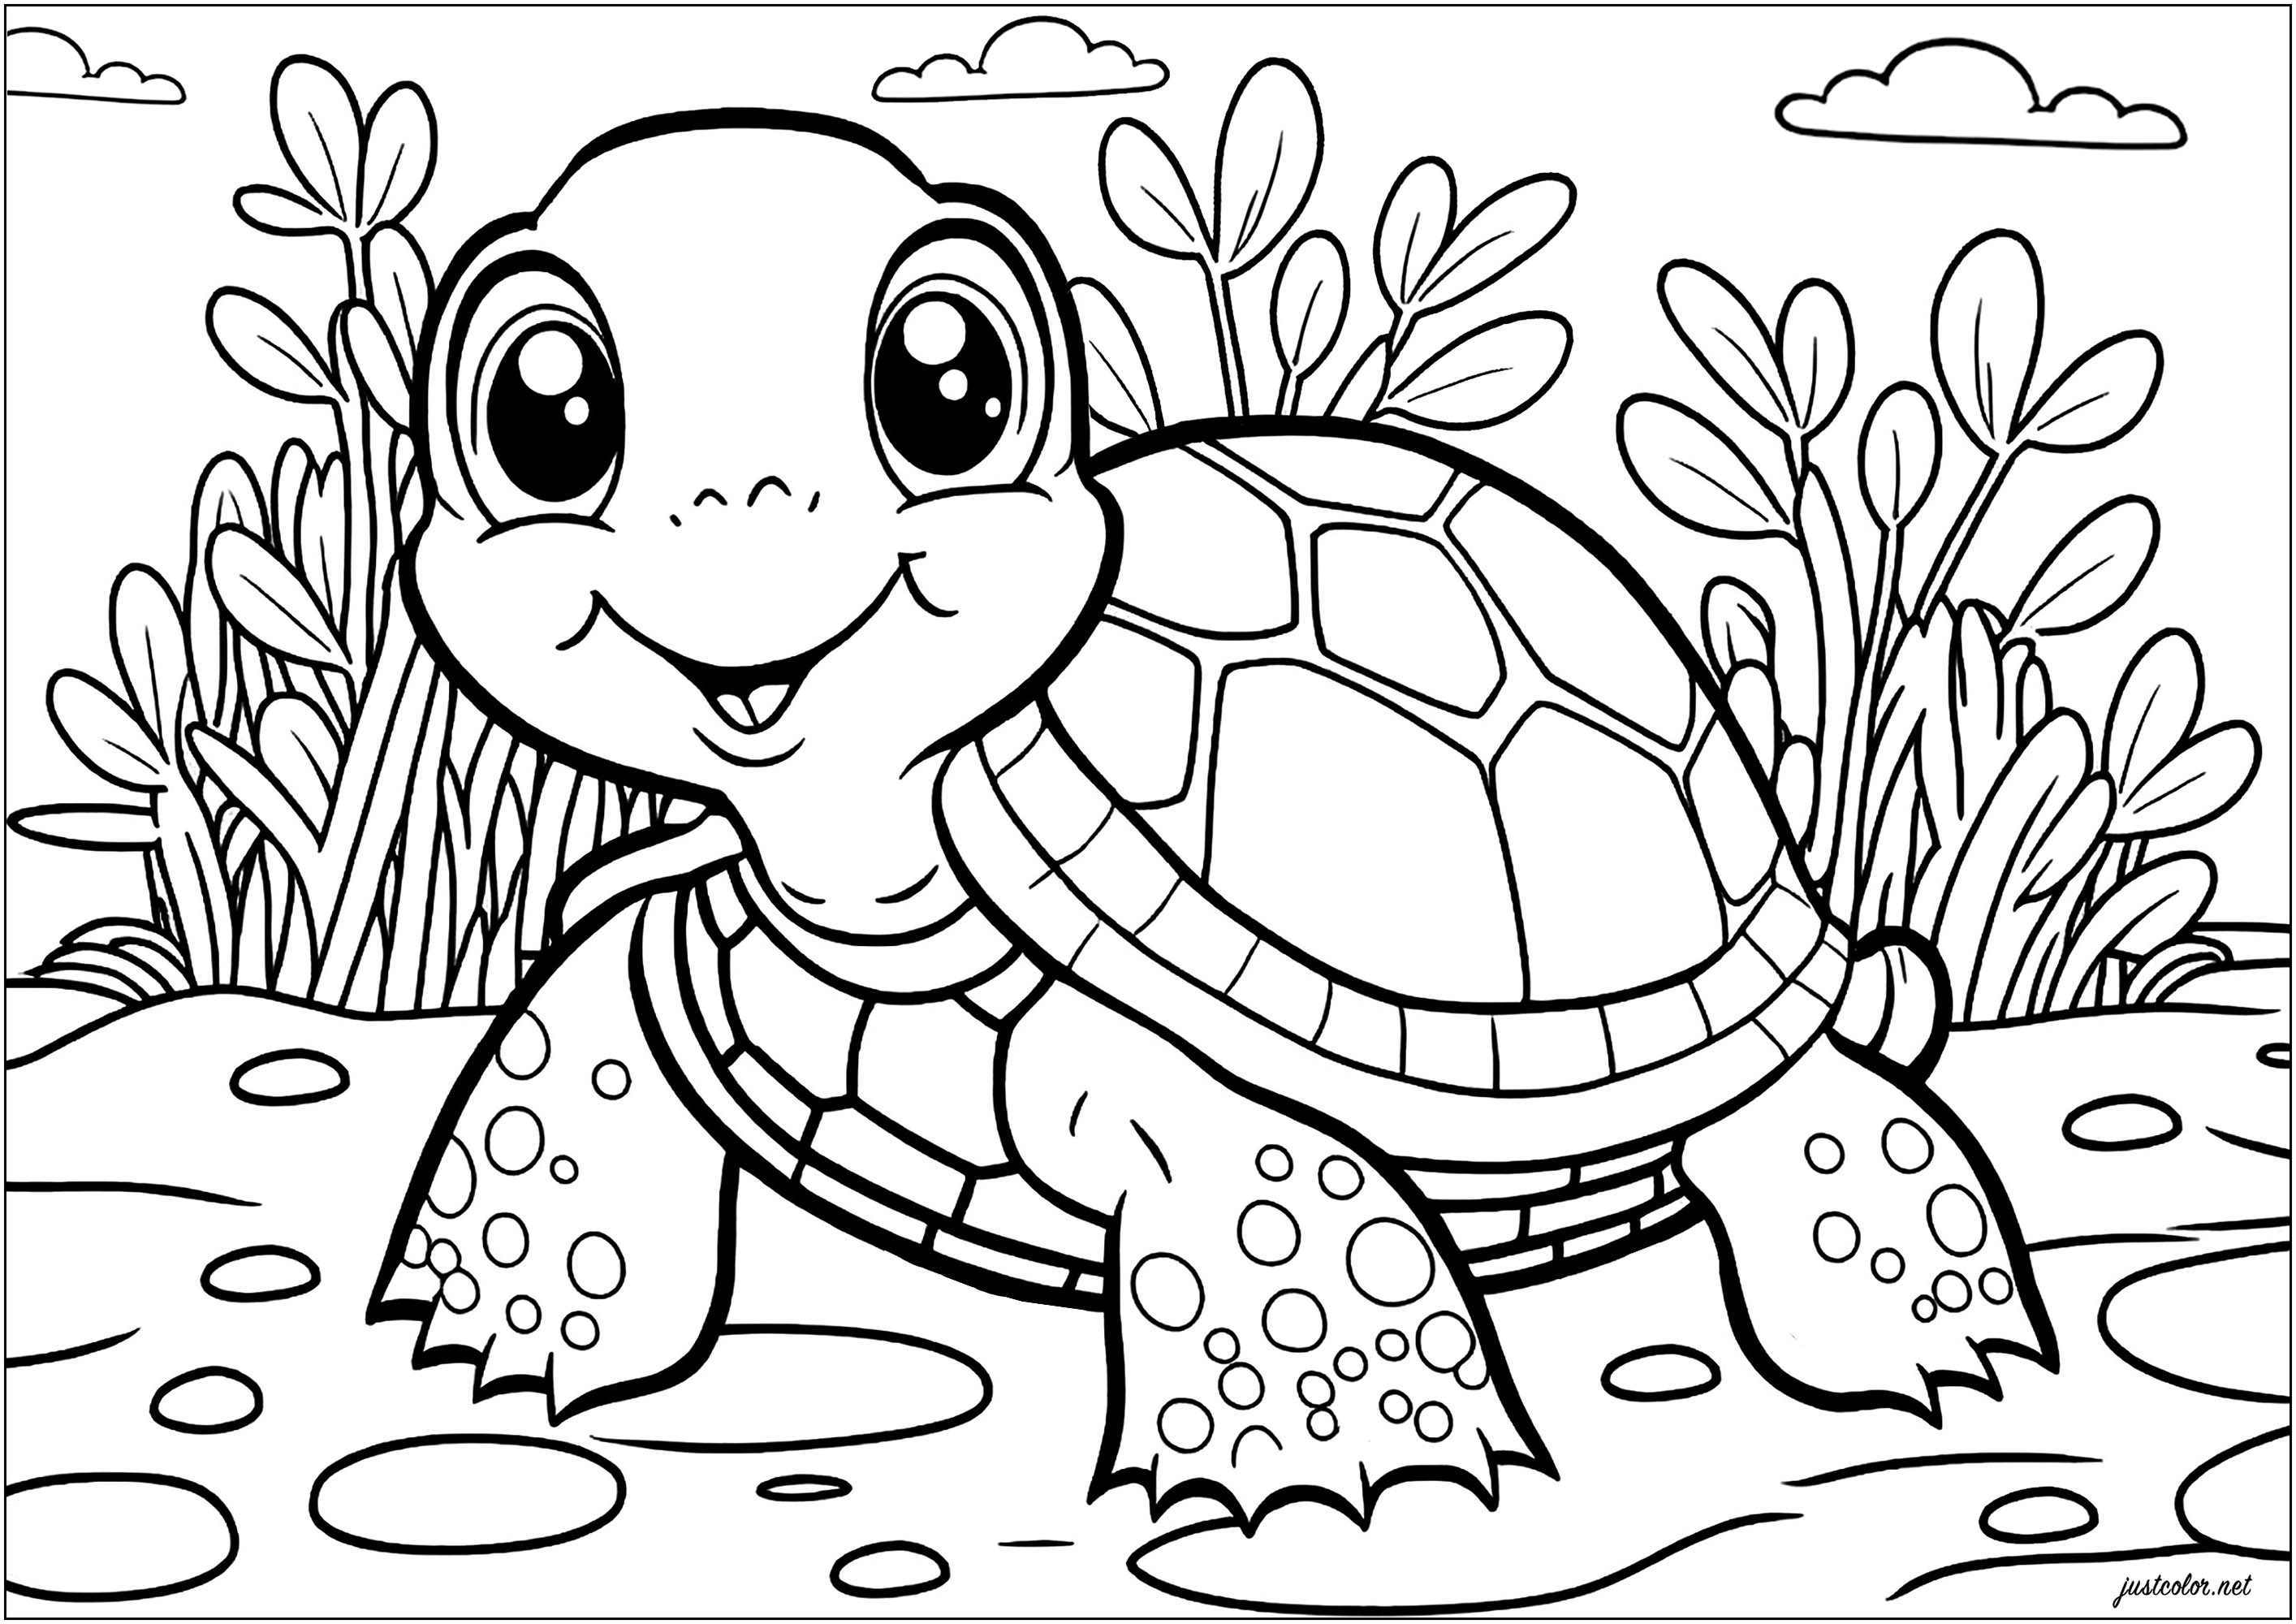 Tortuga sencilla para colorear. Dibuja el mundo natural que rodea a esta tortuga con tu creatividad y tus colores favoritos.